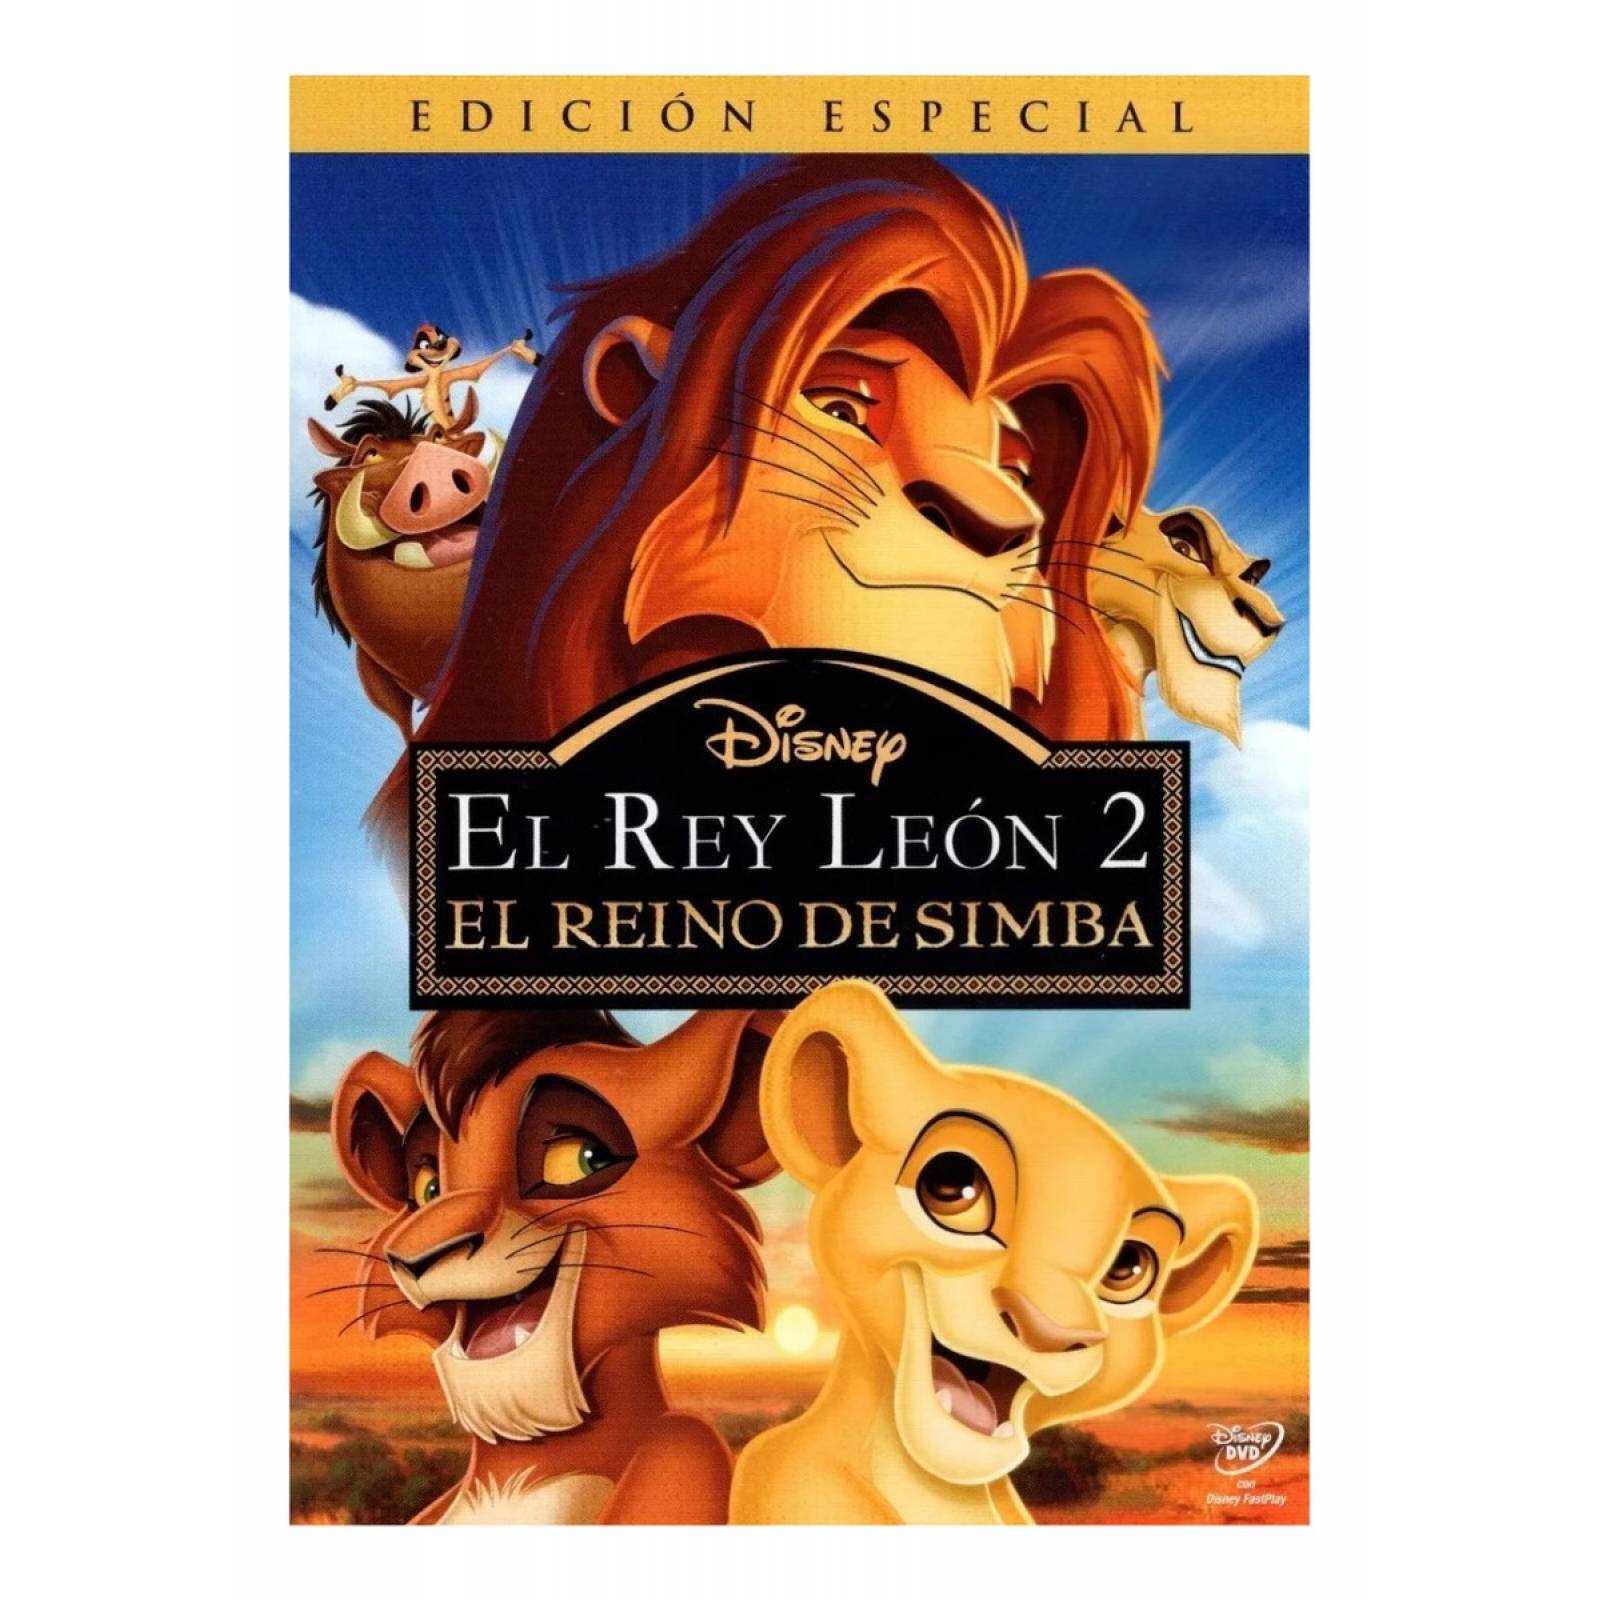 El Rey Leon 2 Reino De Simba Edicion Especial Pelicula Dvd 5361